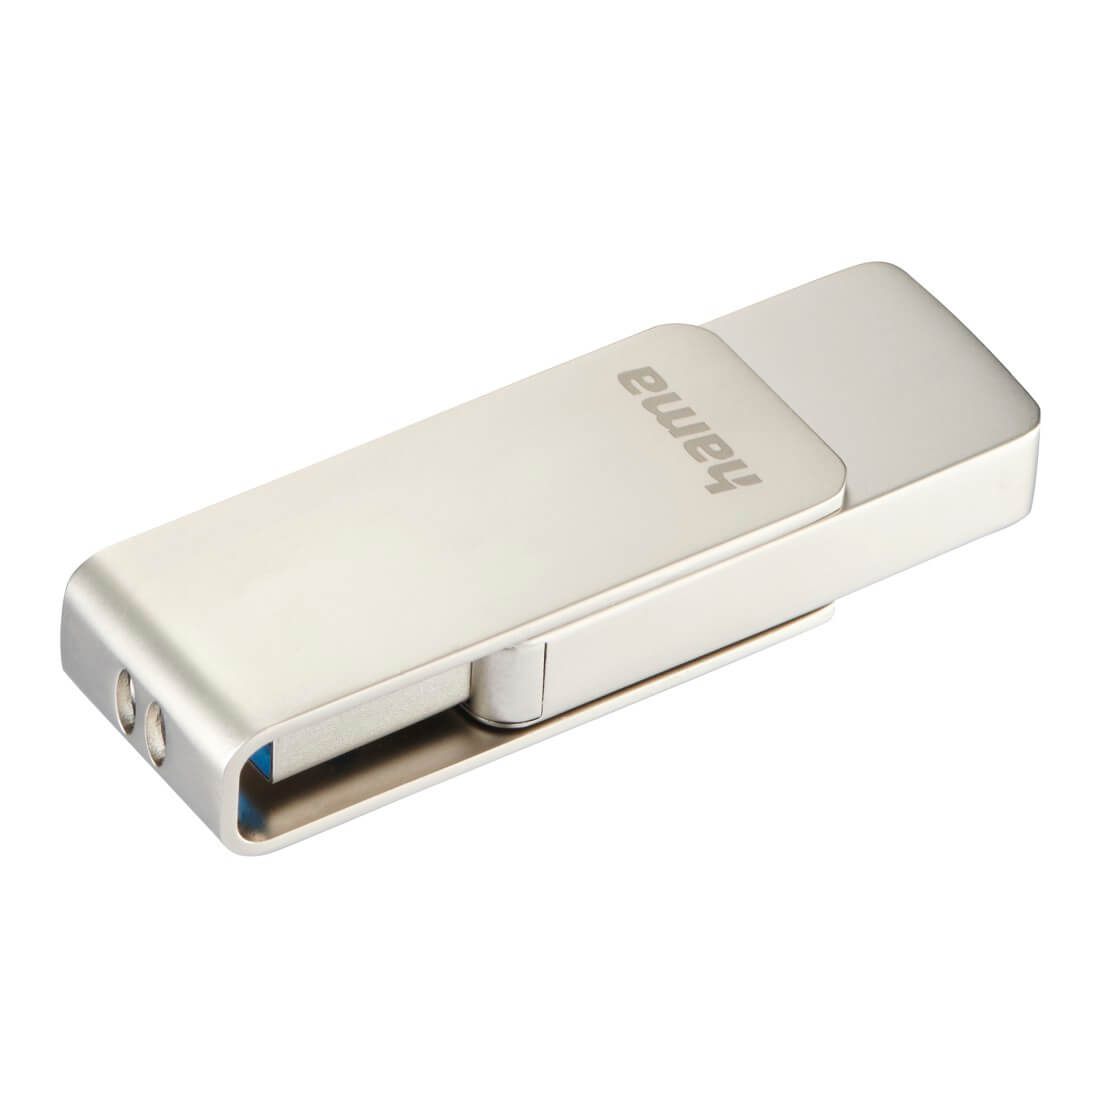 Hama USB-Stick Rotate Pro, USB 3.0, 64GB, 70MB/s